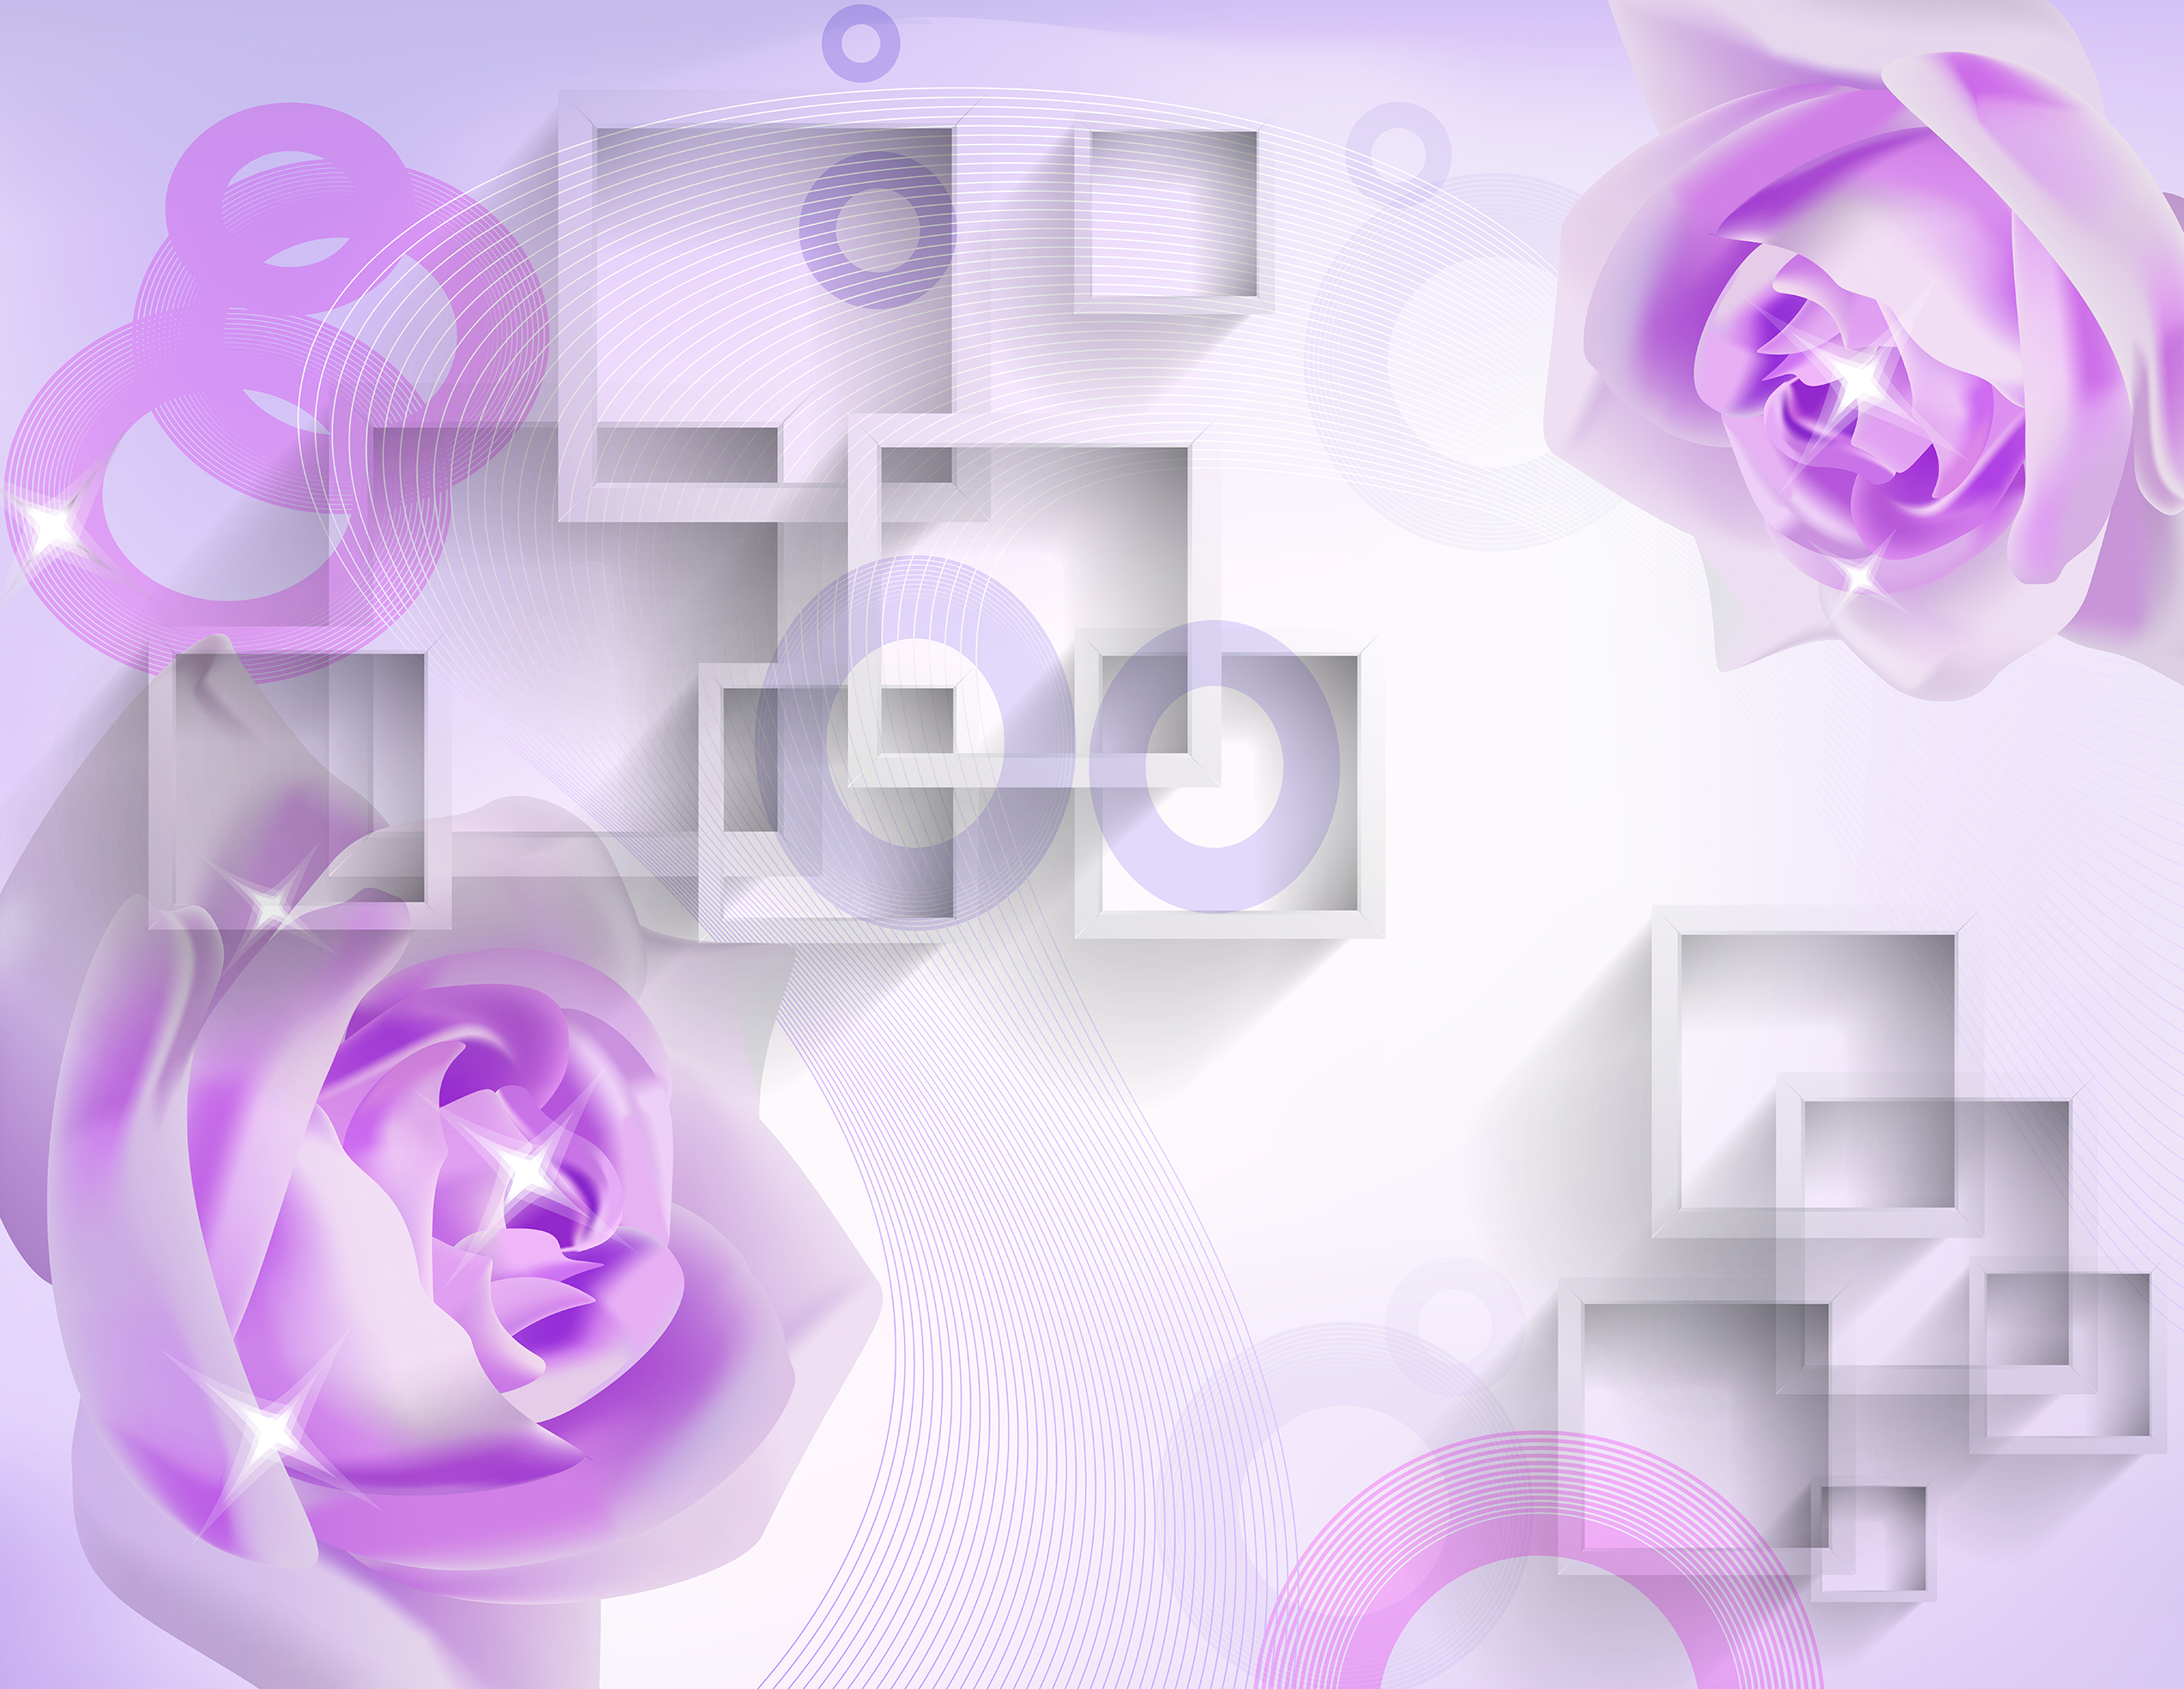 3D紫色玫瑰 耐刮板,肤感打印,艺术玻璃,UV打印,平开衣柜门,整体衣柜,高光系列 3D紫色玫瑰 3D 方块 几何 立体 圆圈 紫色 花朵 玫瑰 矢量